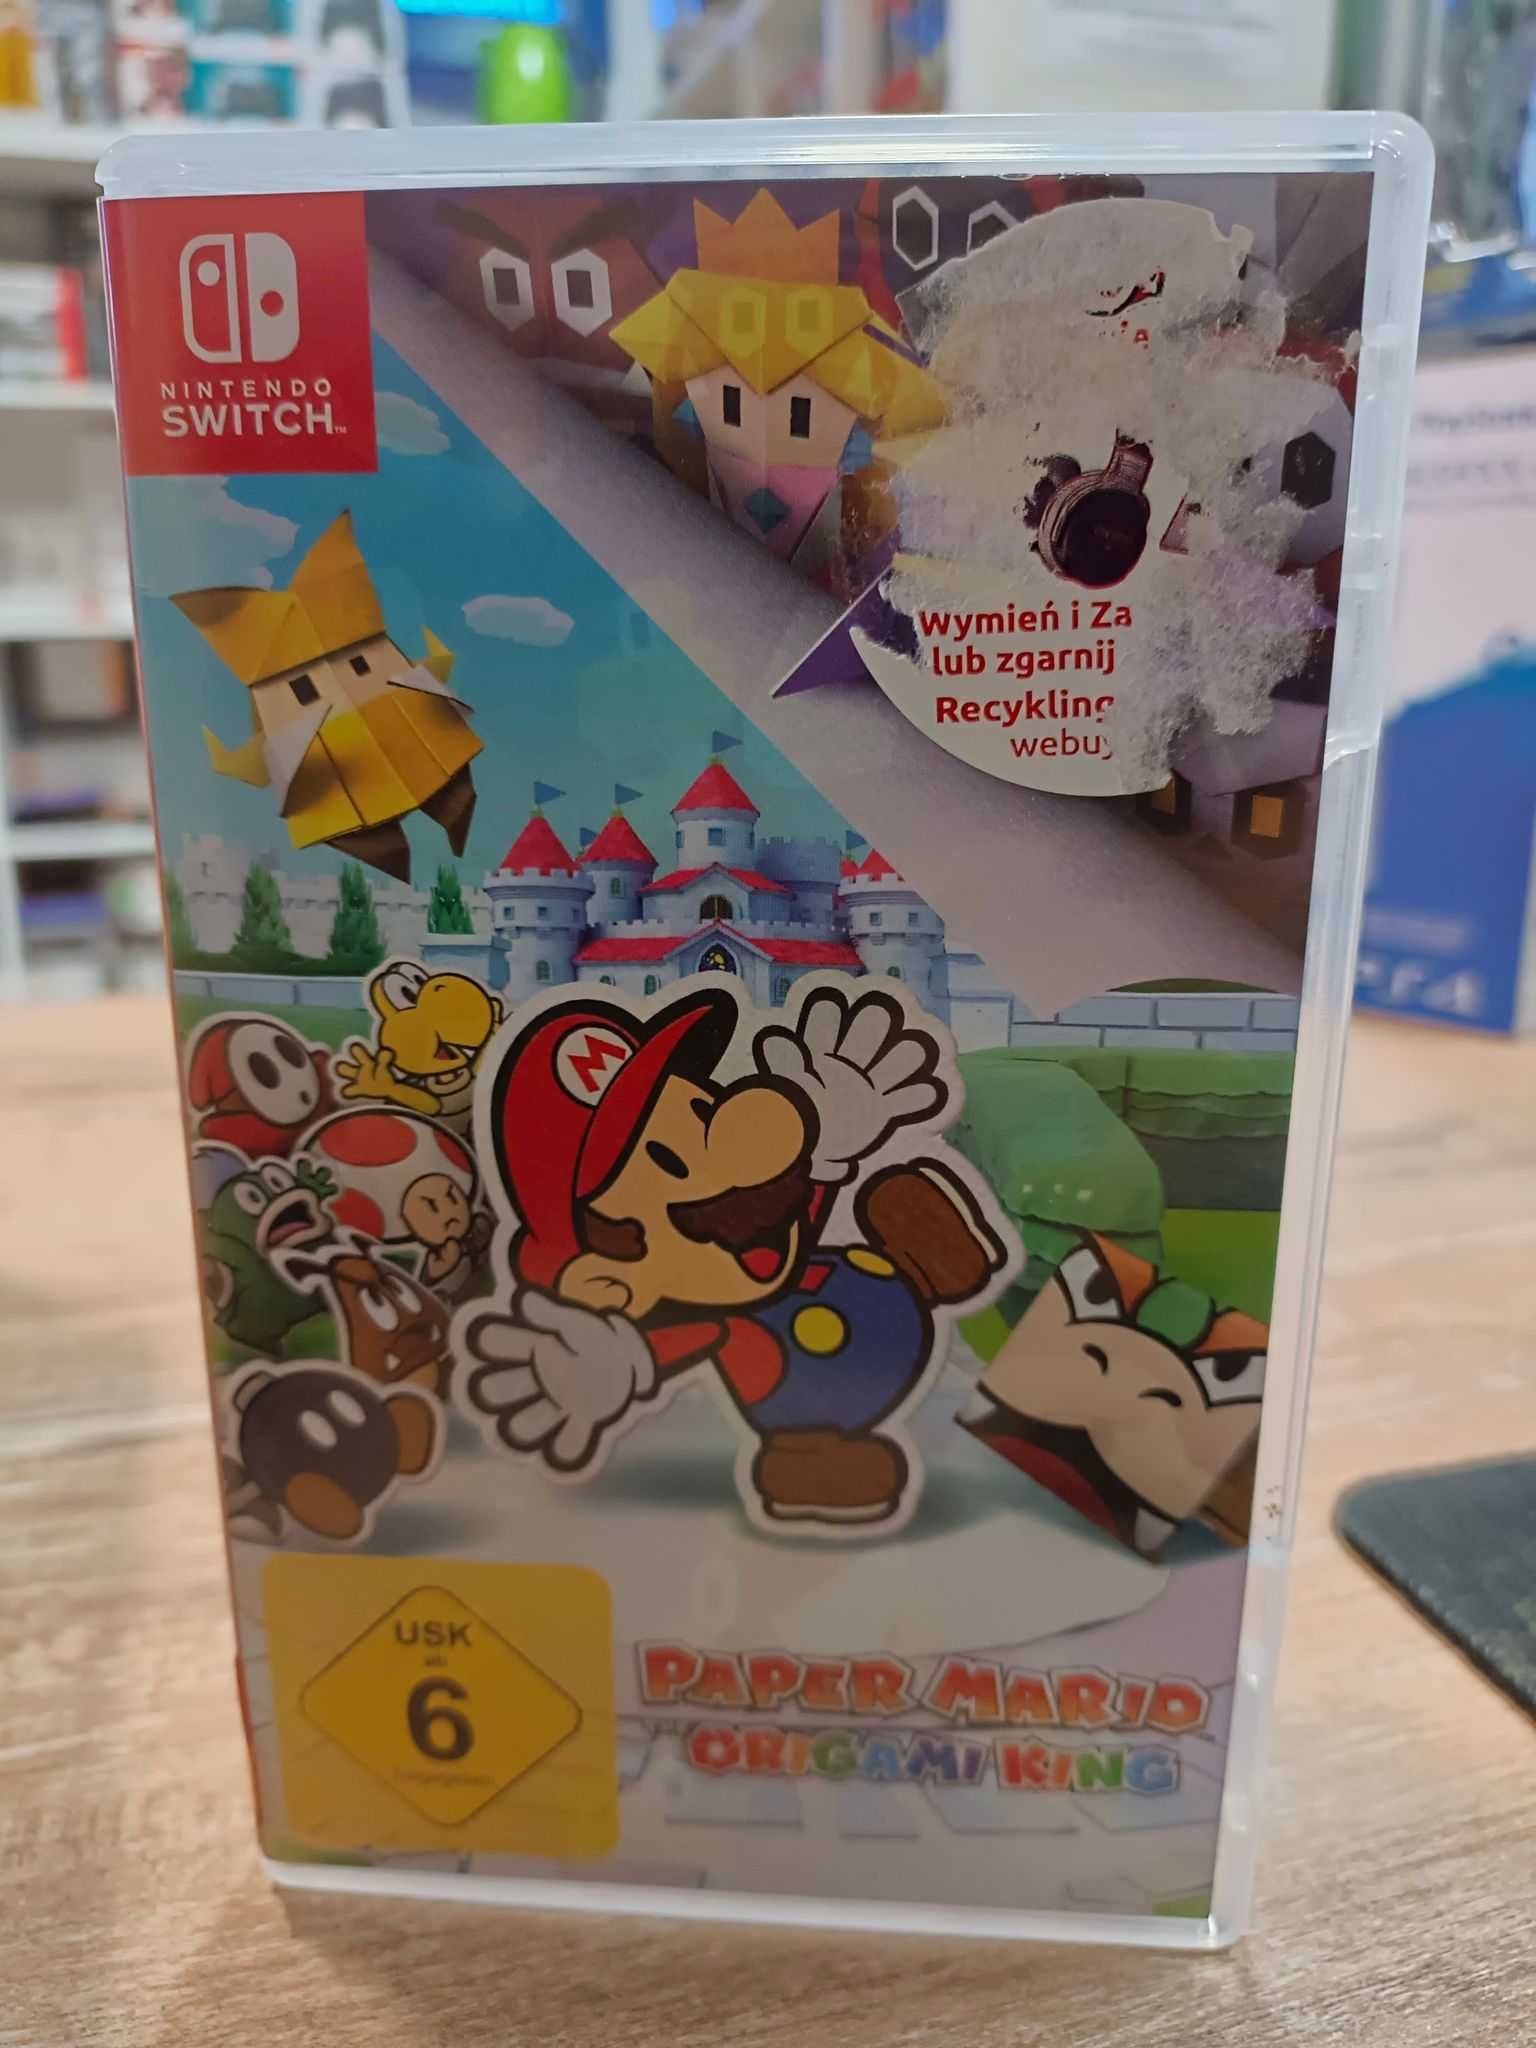 Paper Mario Origami King Nintendo Switch Sklep Wysyłka Wymiana